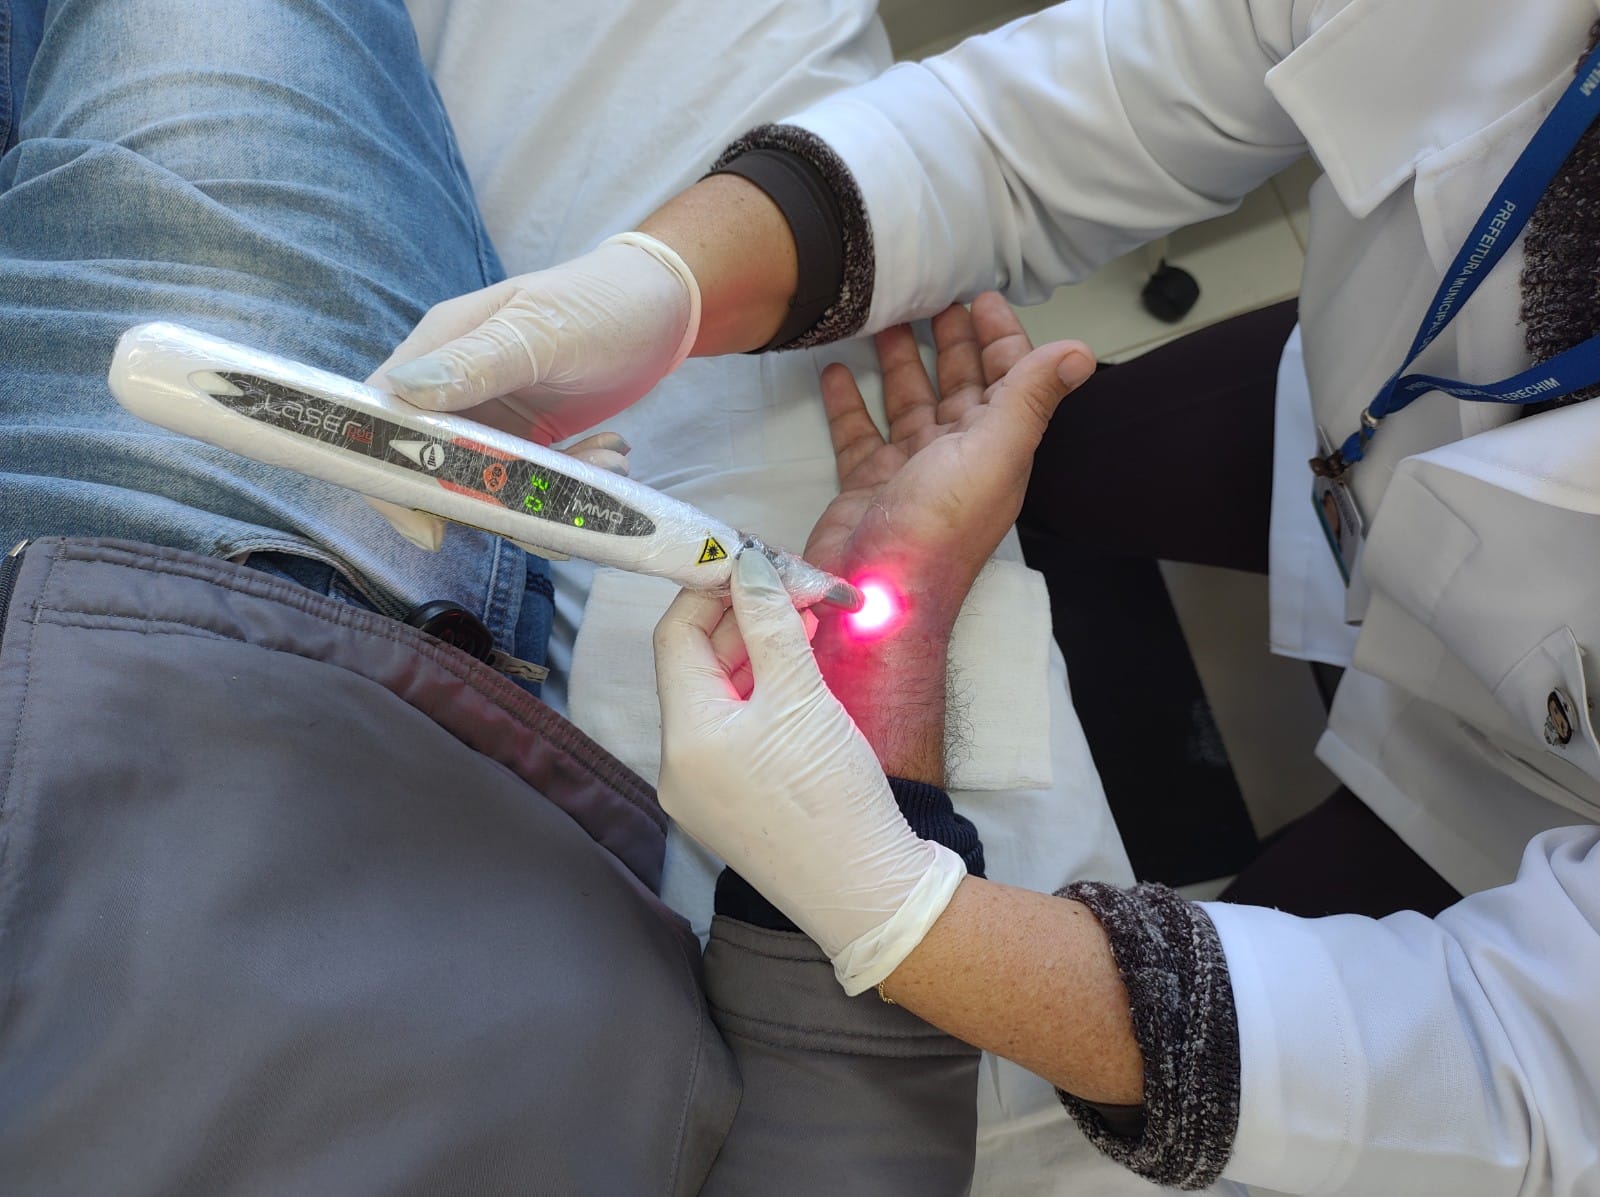 Ambulatorio de Feridas Cronicas adquire novo aparelho a laser para tratamento de pacientes